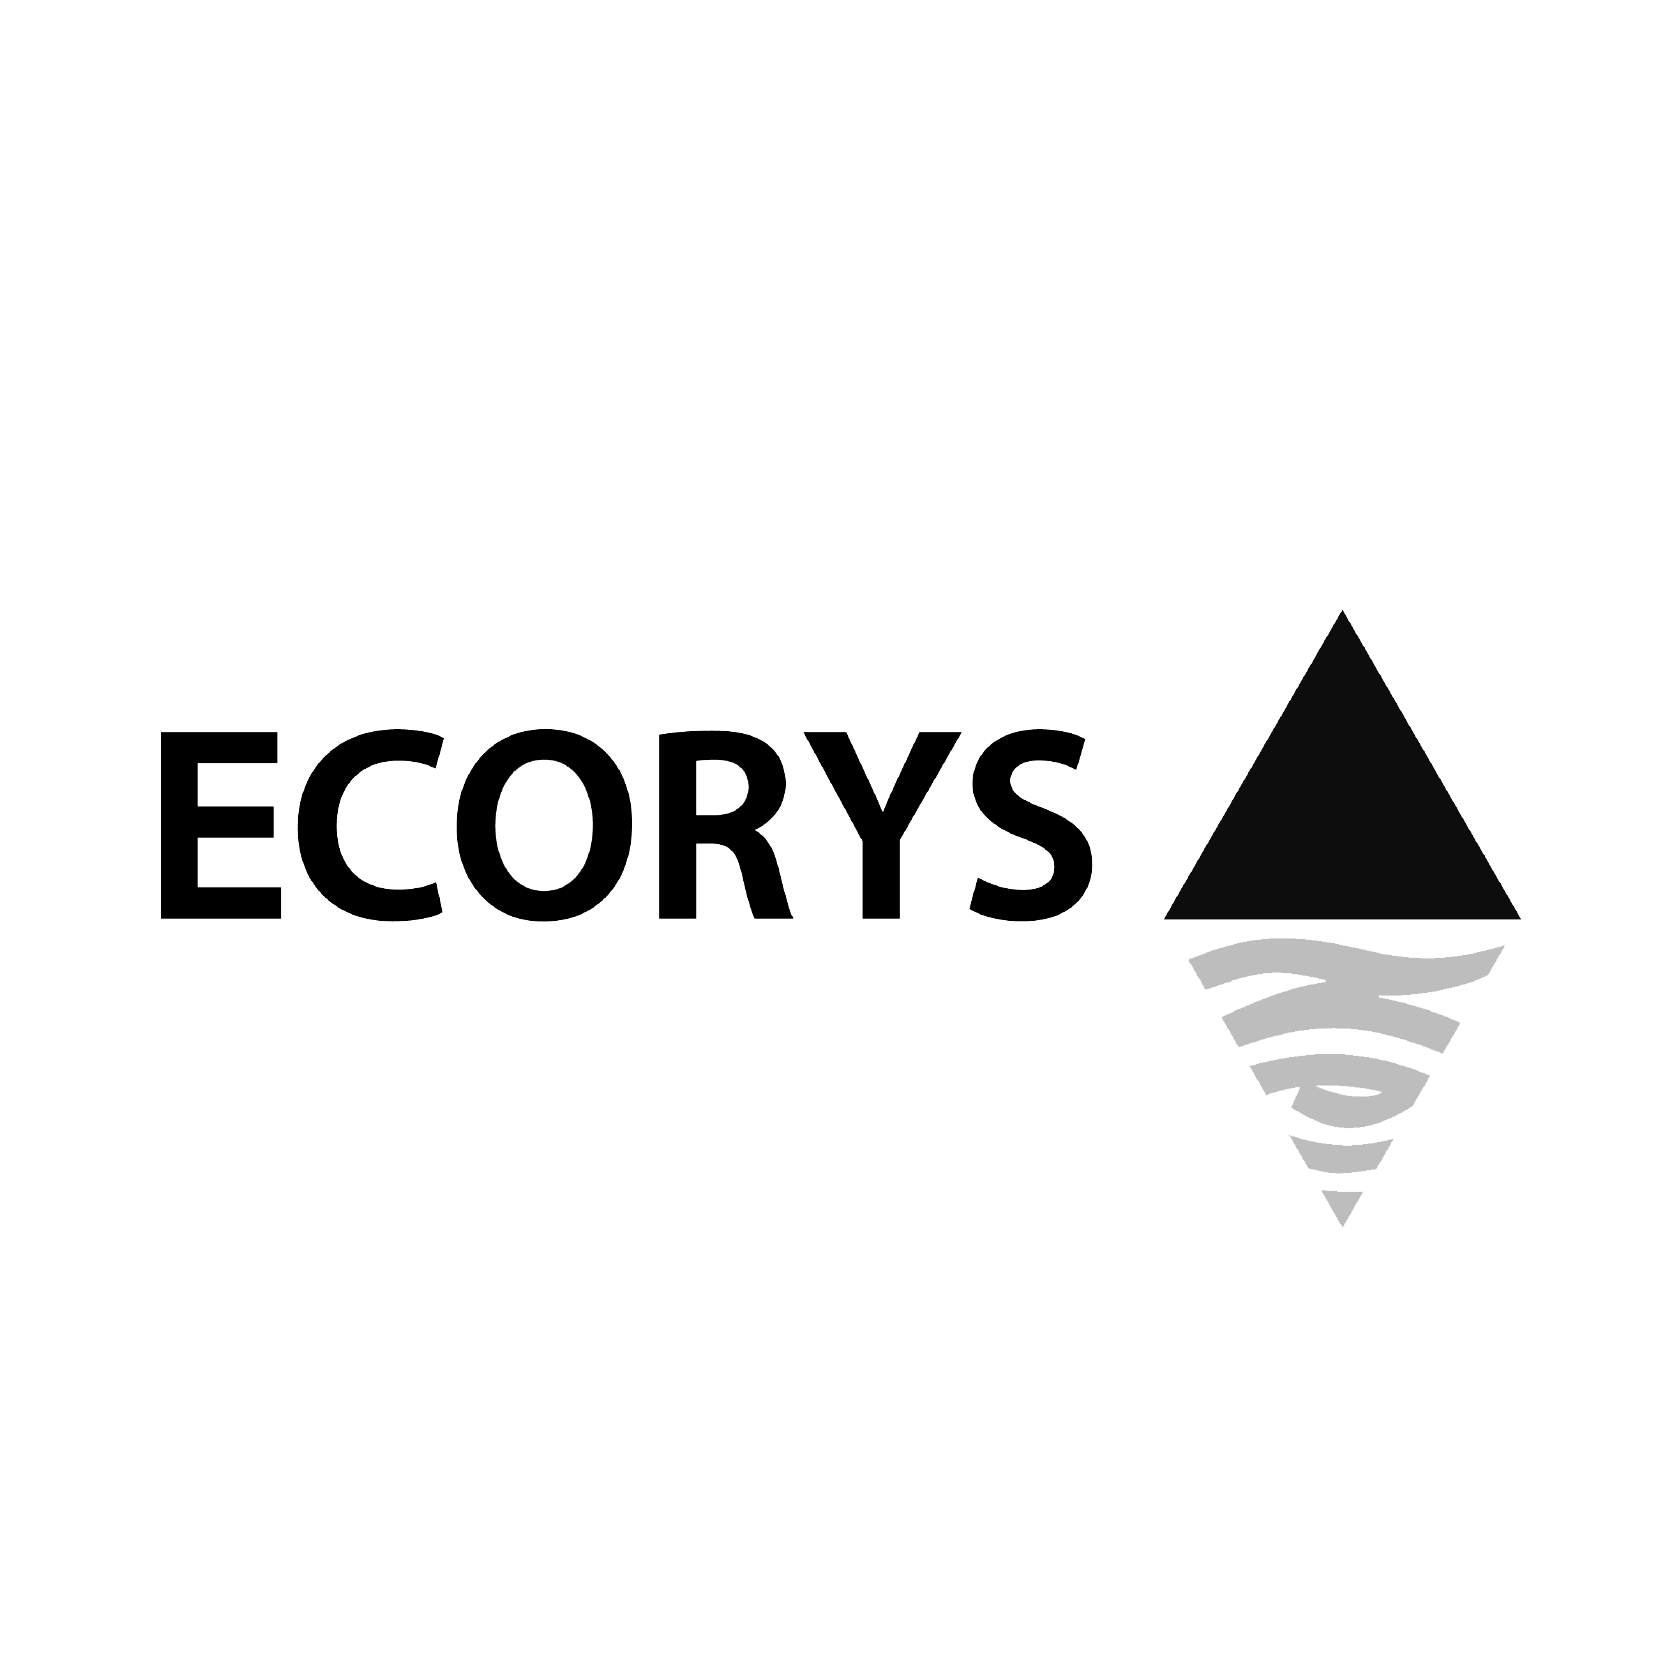 ecorys-bw-logo